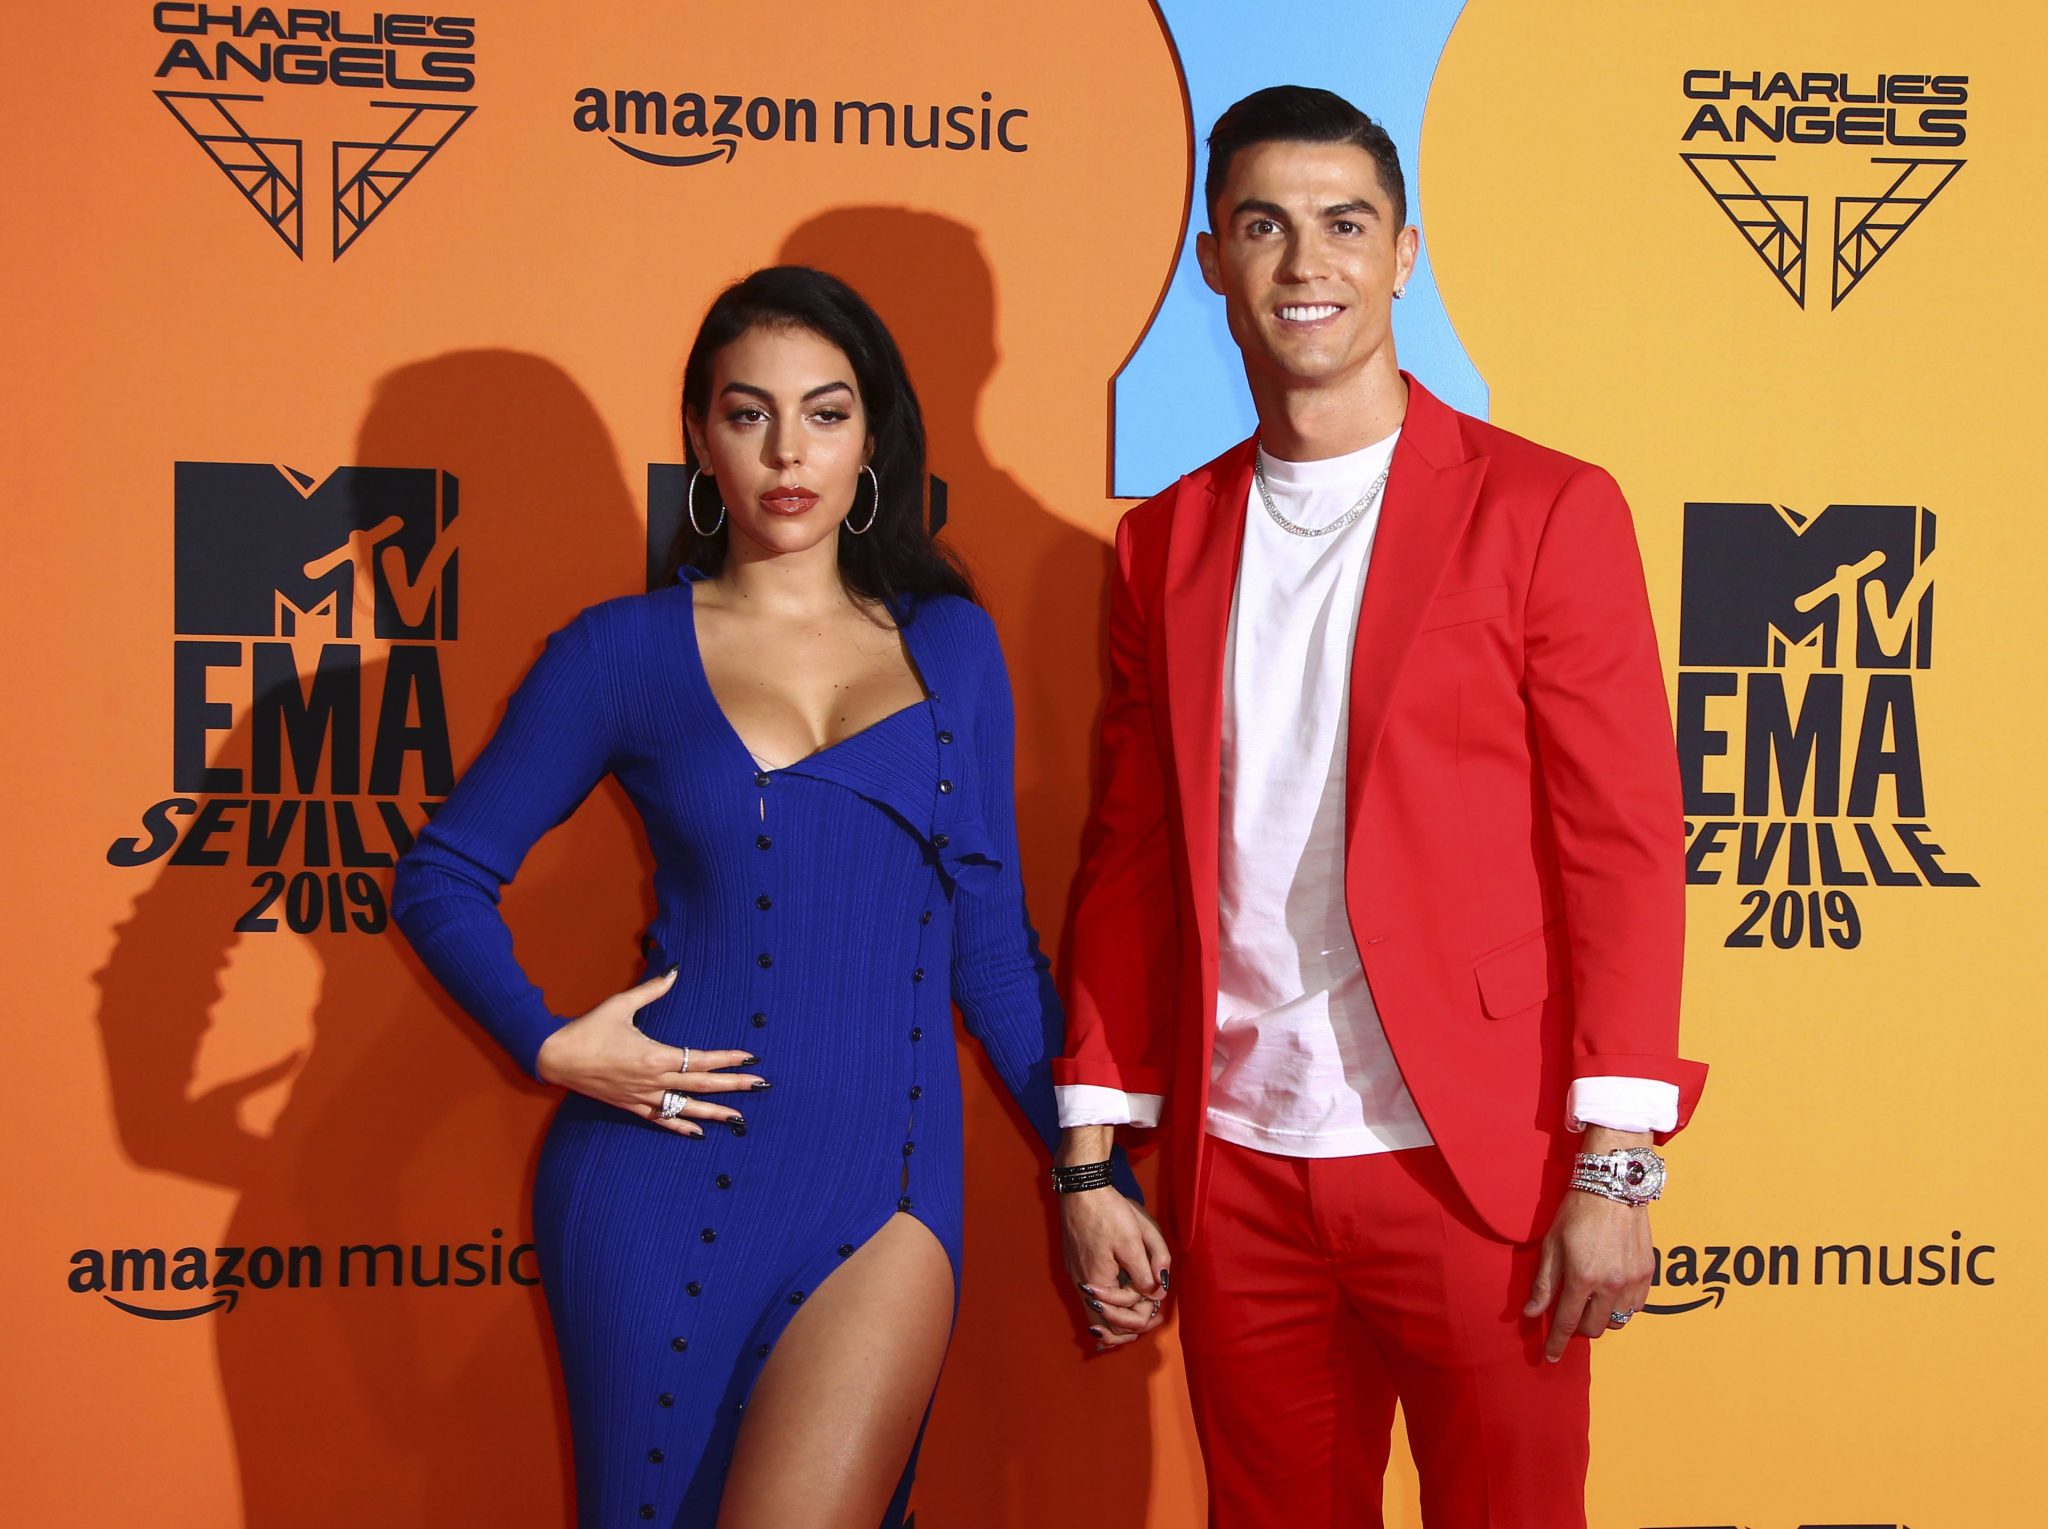 Netflix bientot un documentaire sur Georgina et Cristiano Ronaldo scaled - Netflix : bientôt un documentaire sur Georgina et Cristiano Ronaldo